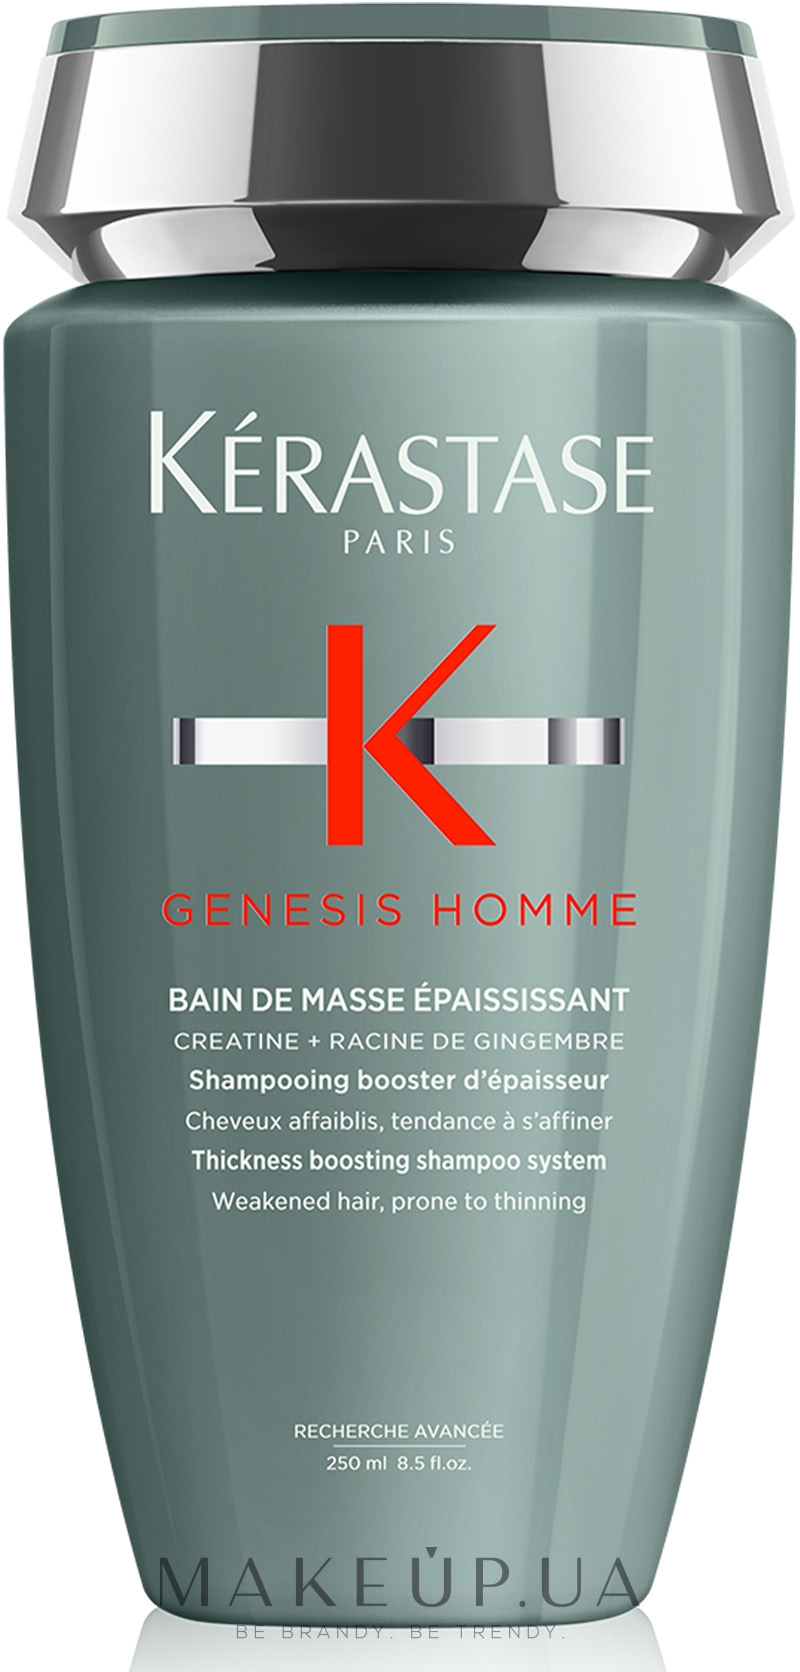 Шампунь-ванна, бустер густоты для ослабленных тонких волос мужчин - Kerastase Genesis Homme Bain de Masse Epaississant — фото 250ml